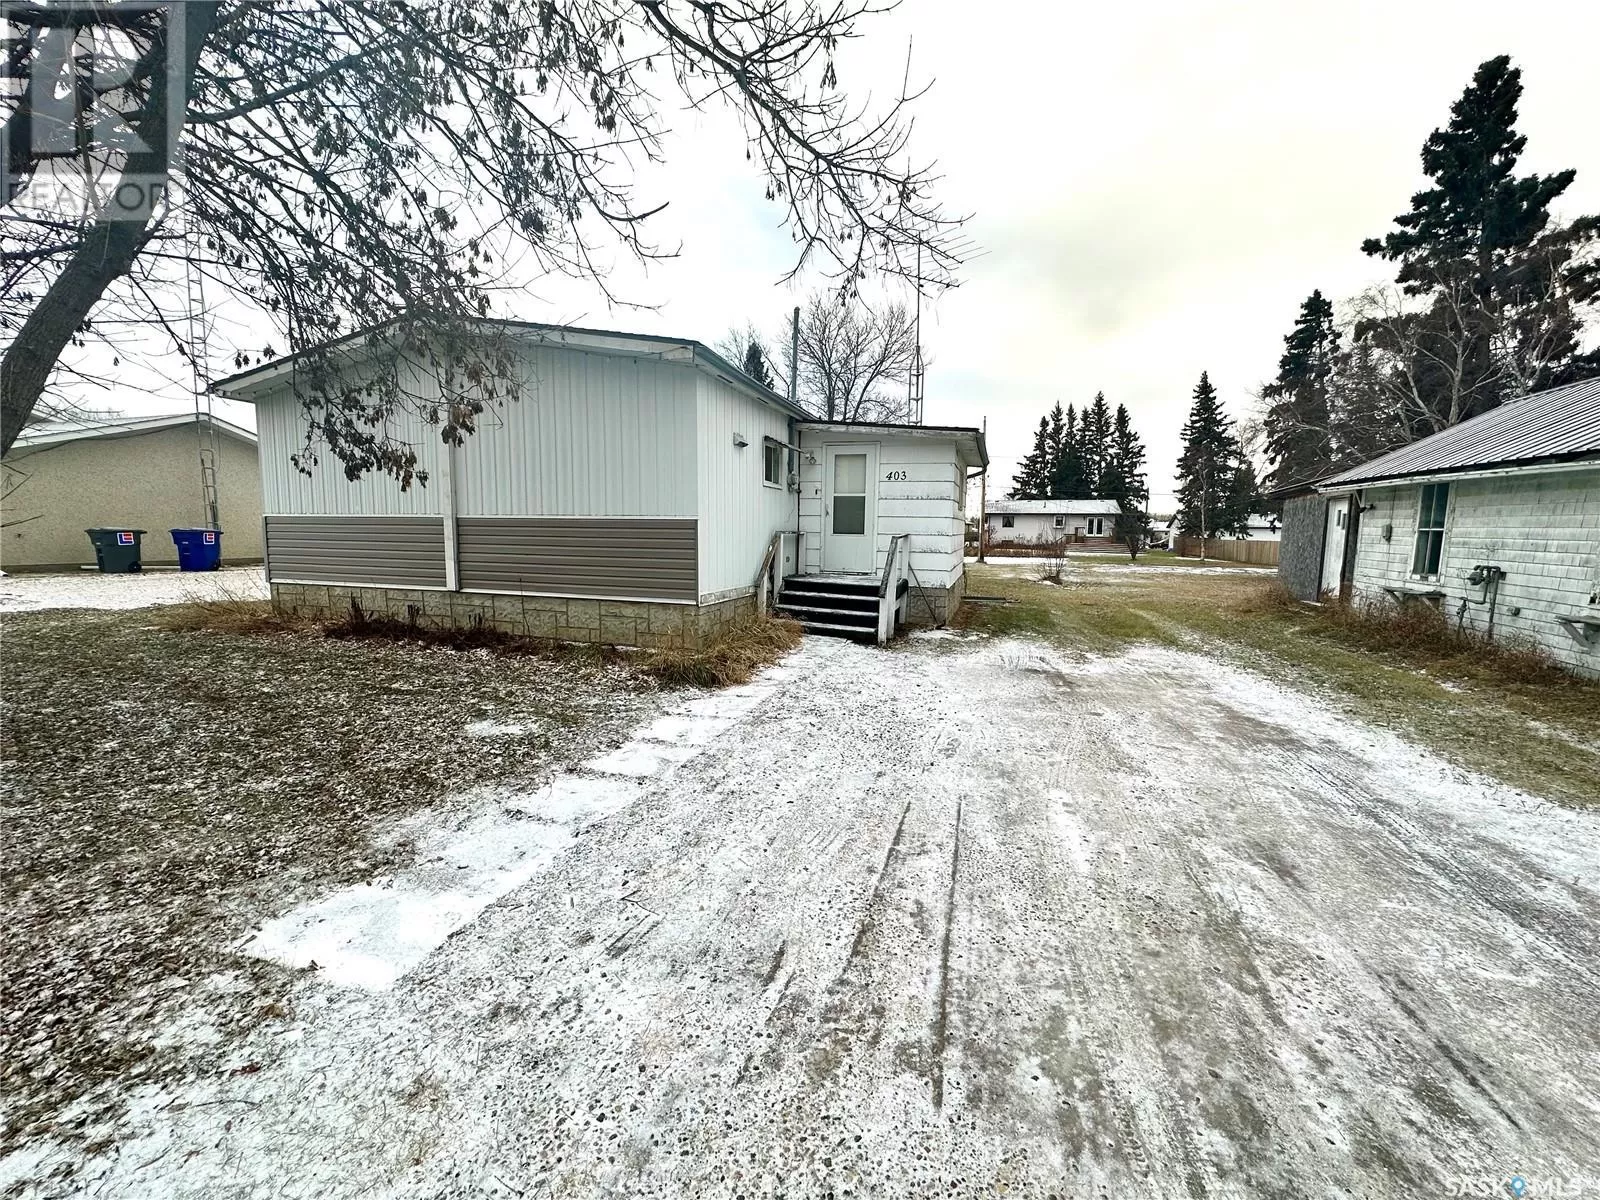 Mobile Home for rent: 403 4th Avenue, Medstead, Saskatchewan S0M 1W0